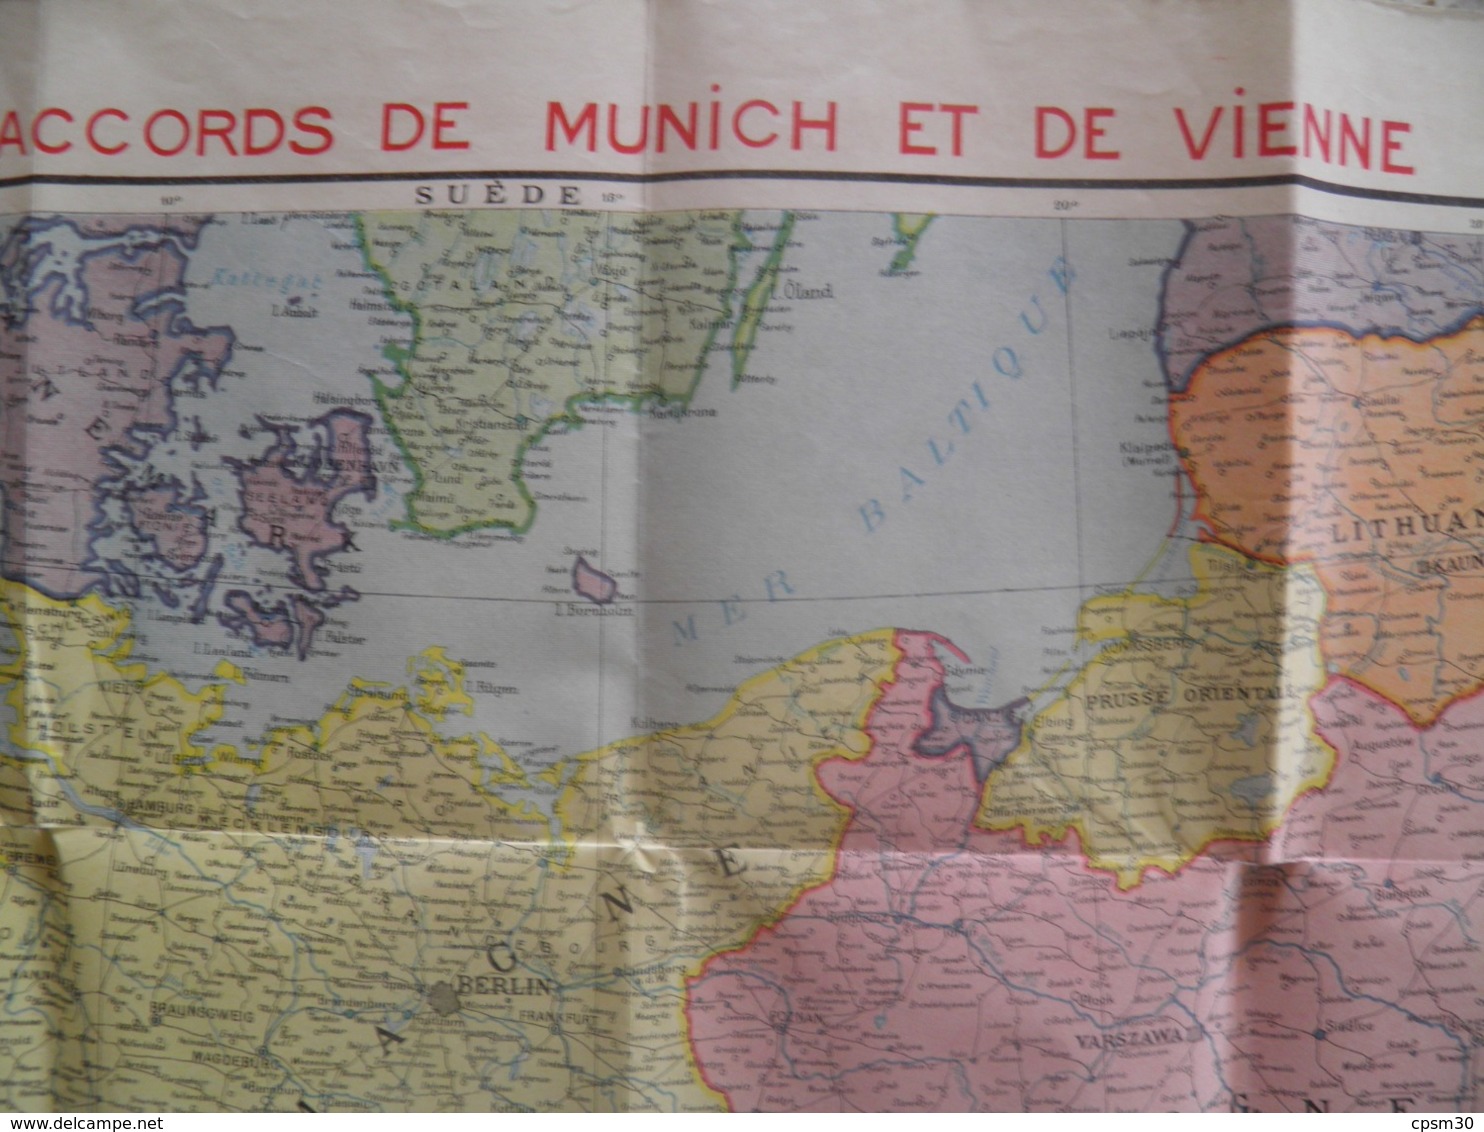 Carte Routière Europe Centrale Après Les Accords De Munnich Et Vienne (pub De Sirop Delabarre) 75 X 105 Cm - Cartes Routières